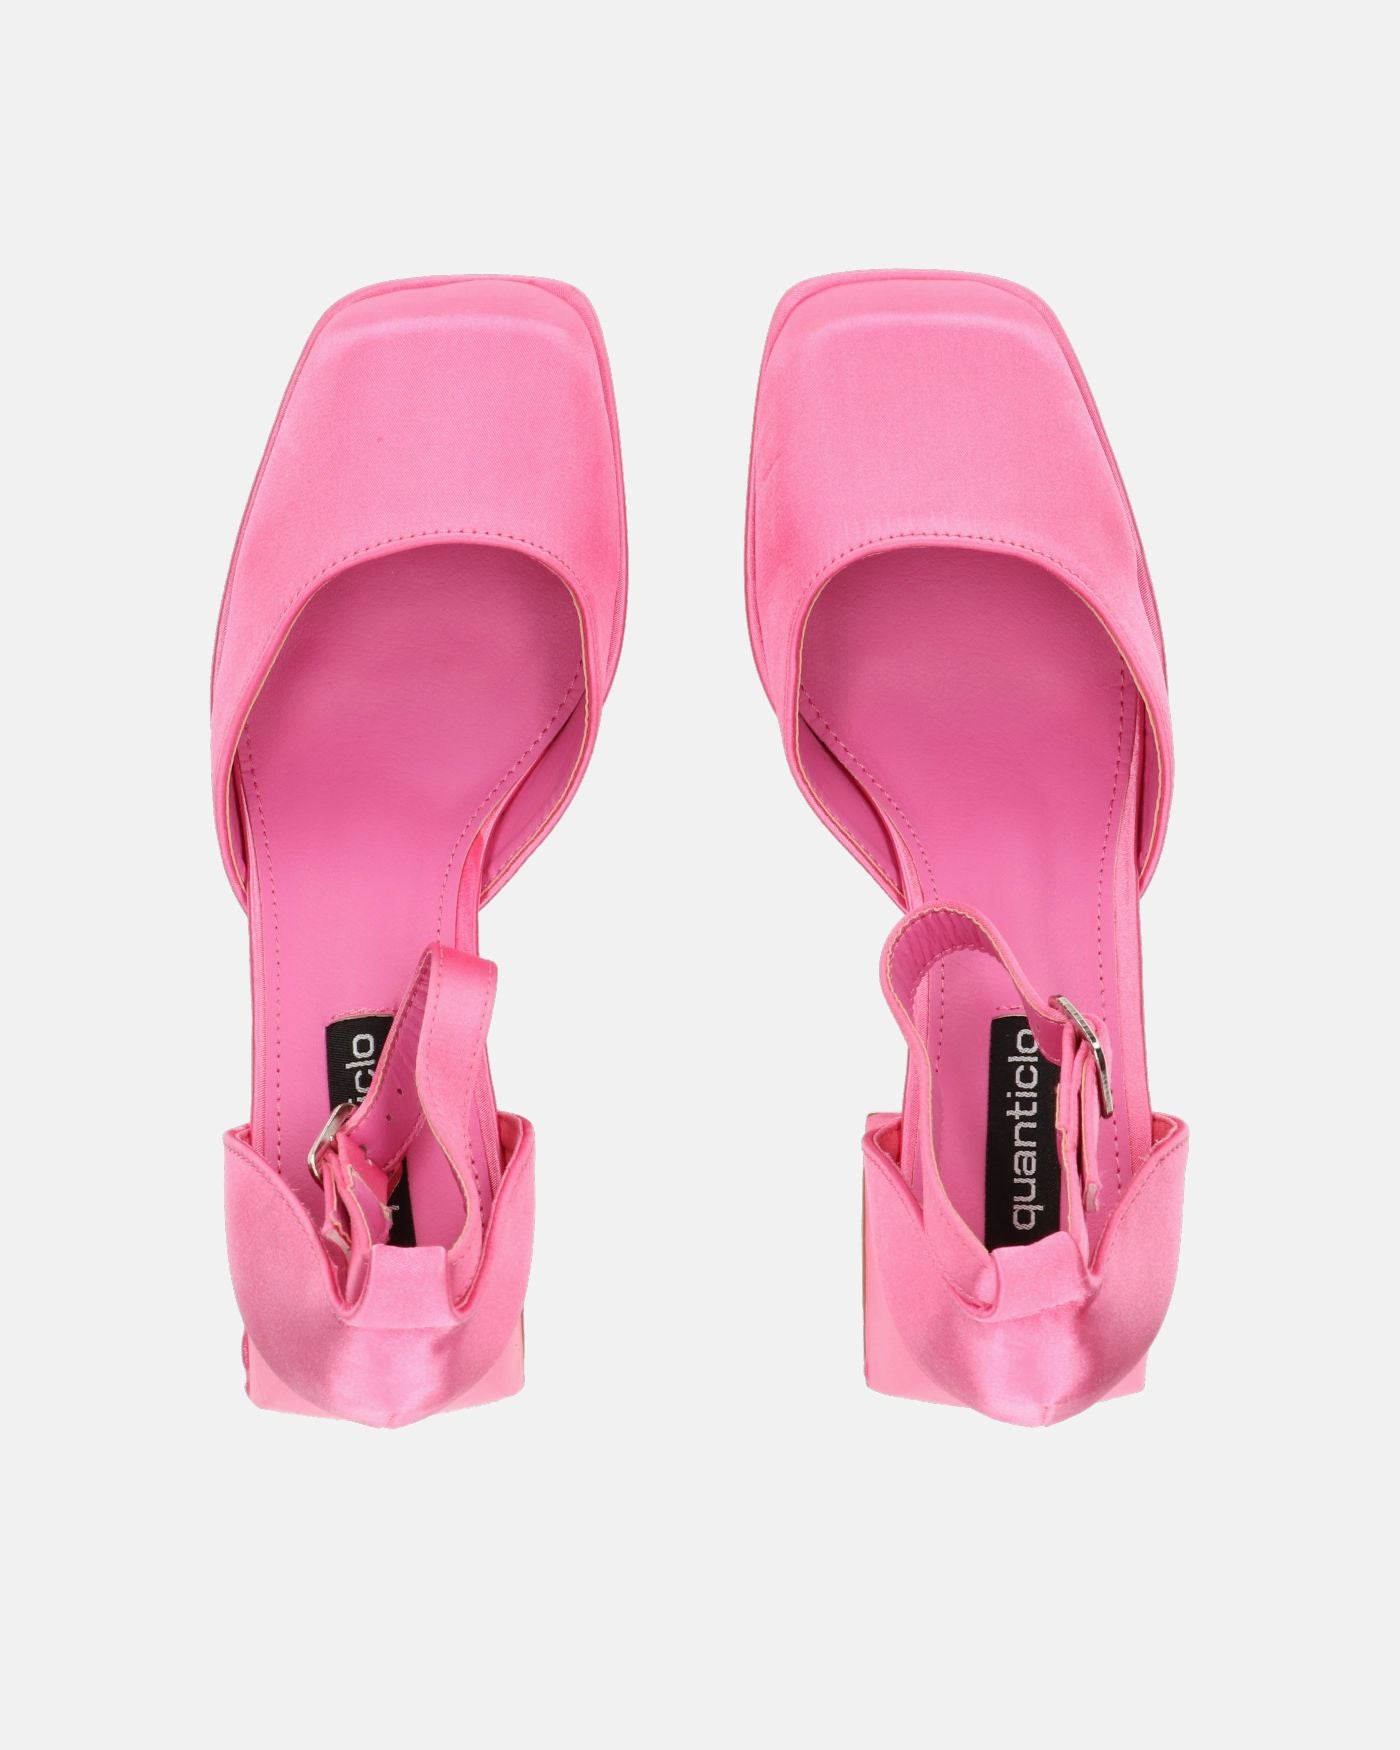 VIDA - chaussures à talon carré en satin rose